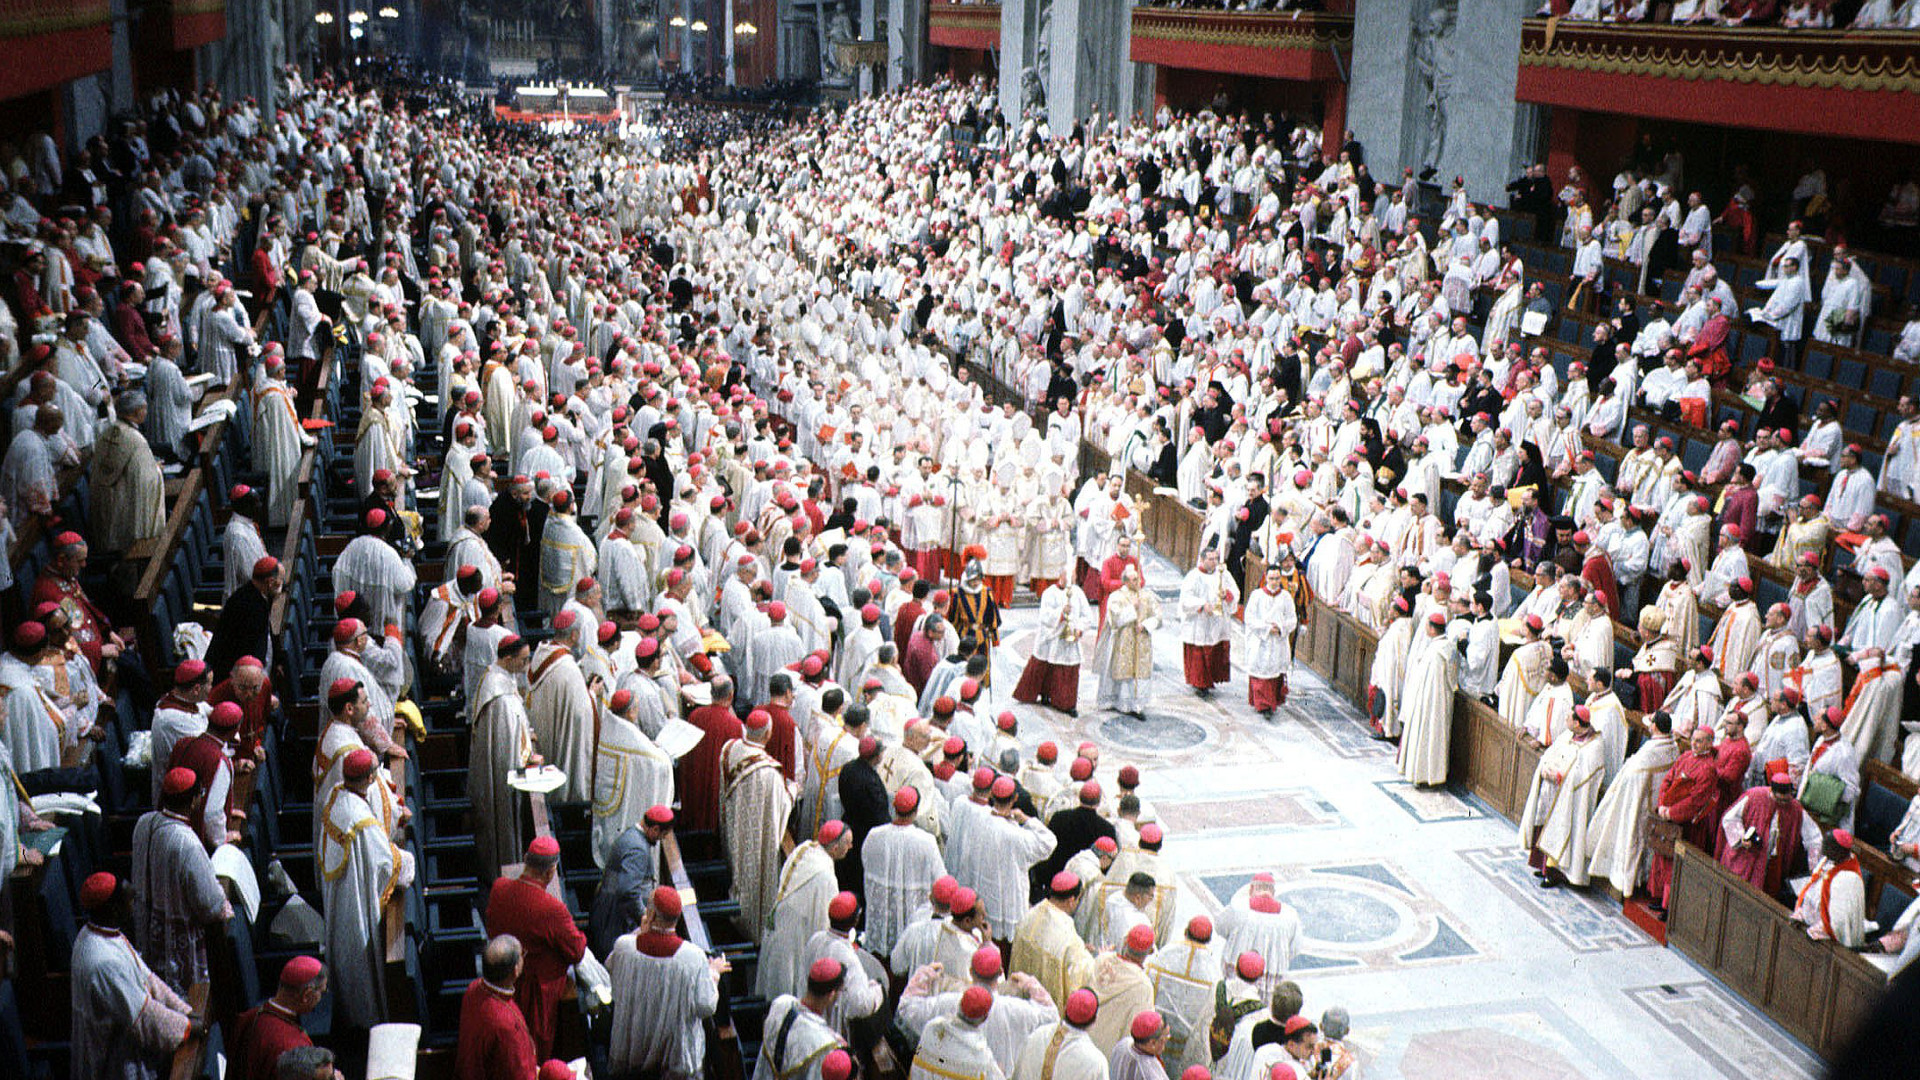 Zweites Vatikanisches Konzil -  Einzug in den Petersdom zum Ende des Konzils